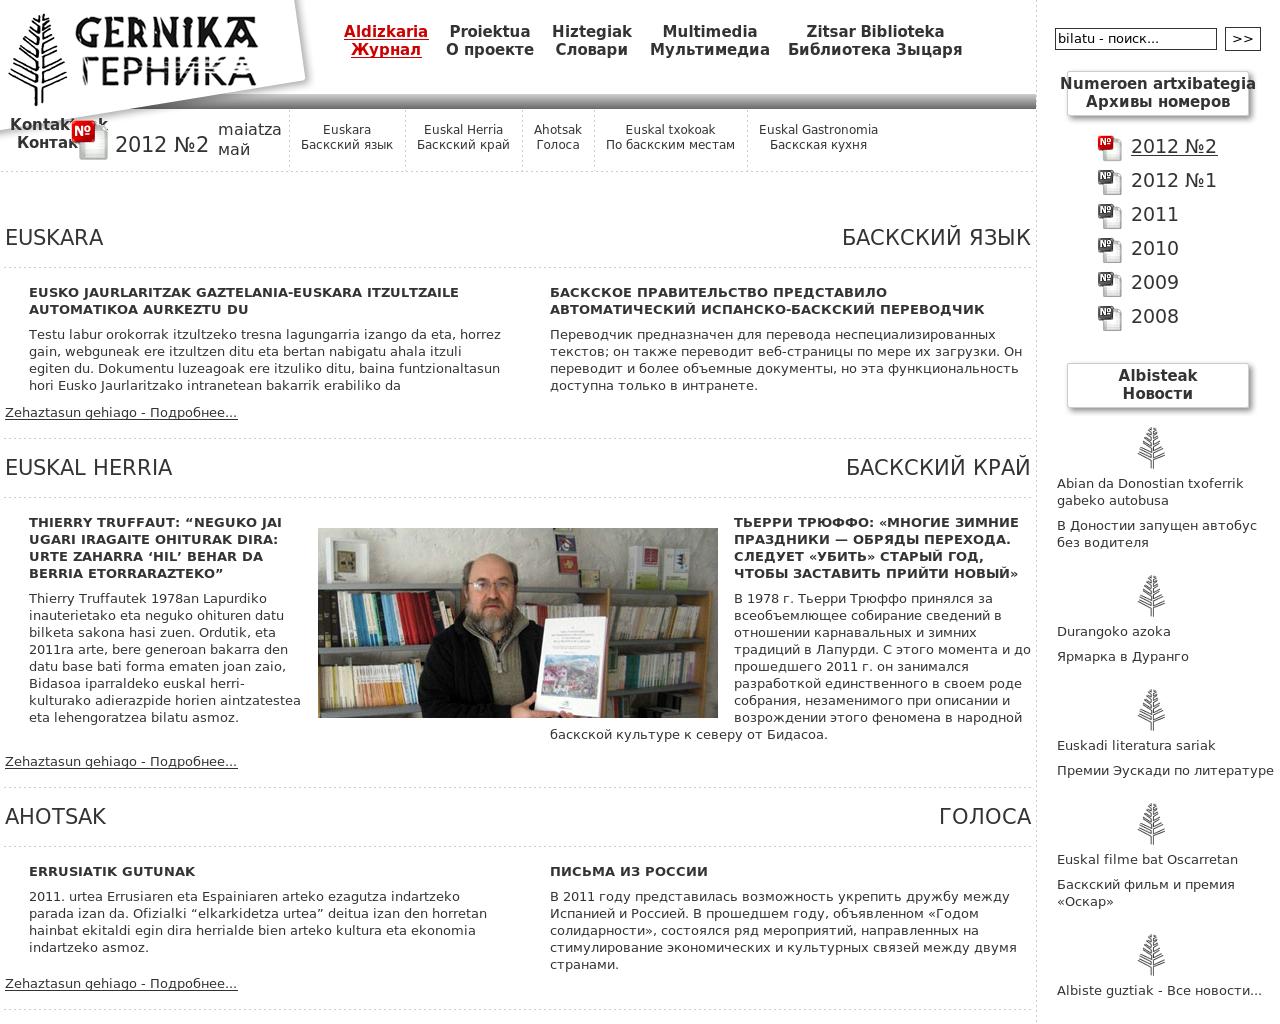 Изображение сайта gernika.su в разрешении 1280x1024